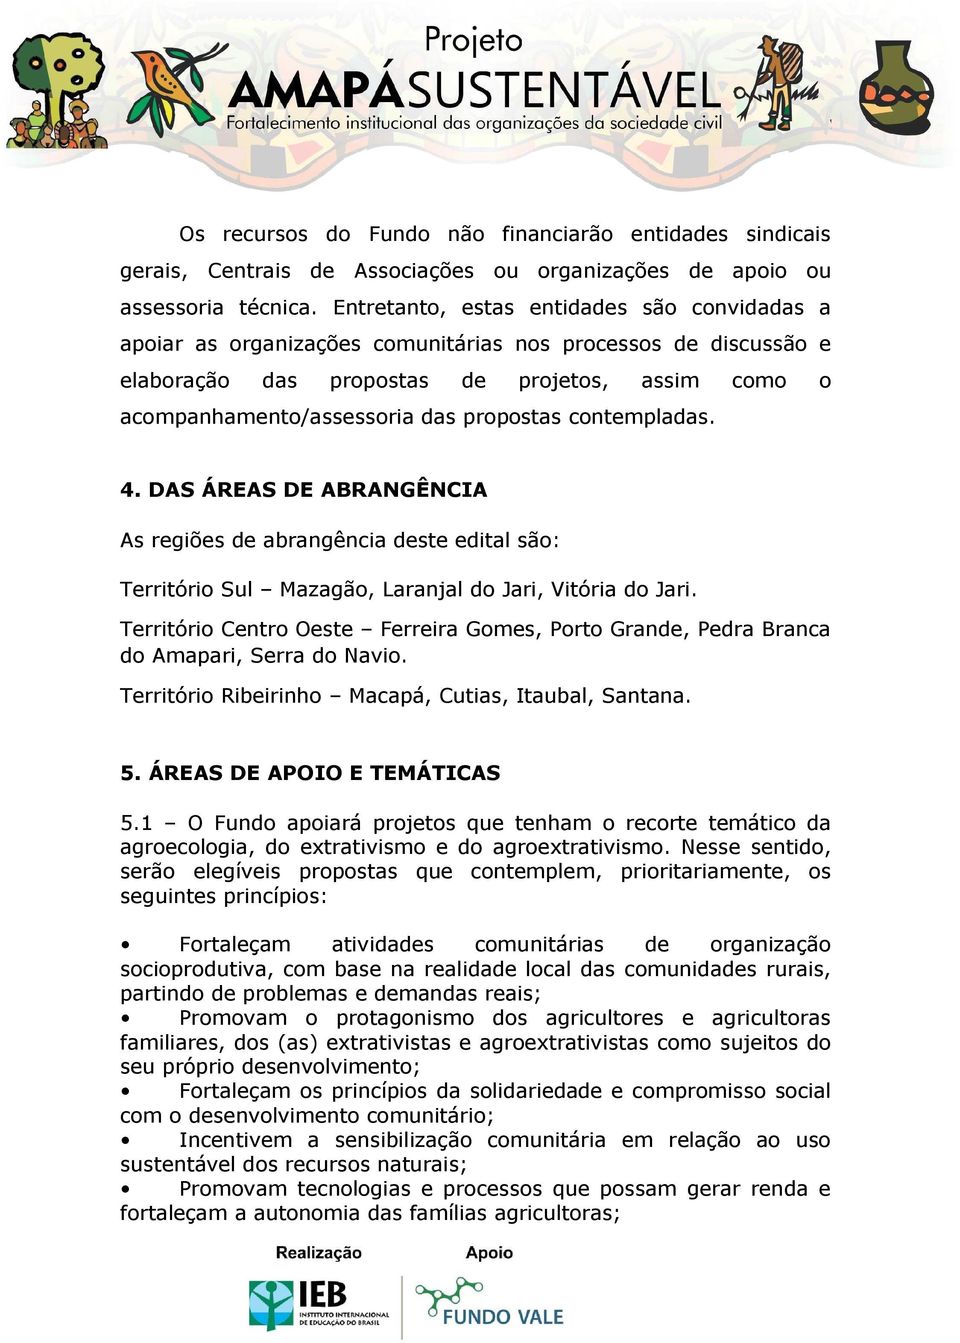 propostas contempladas. 4. DAS ÁREAS DE ABRANGÊNCIA As regiões de abrangência deste edital são: Território Sul Mazagão, Laranjal do Jari, Vitória do Jari.